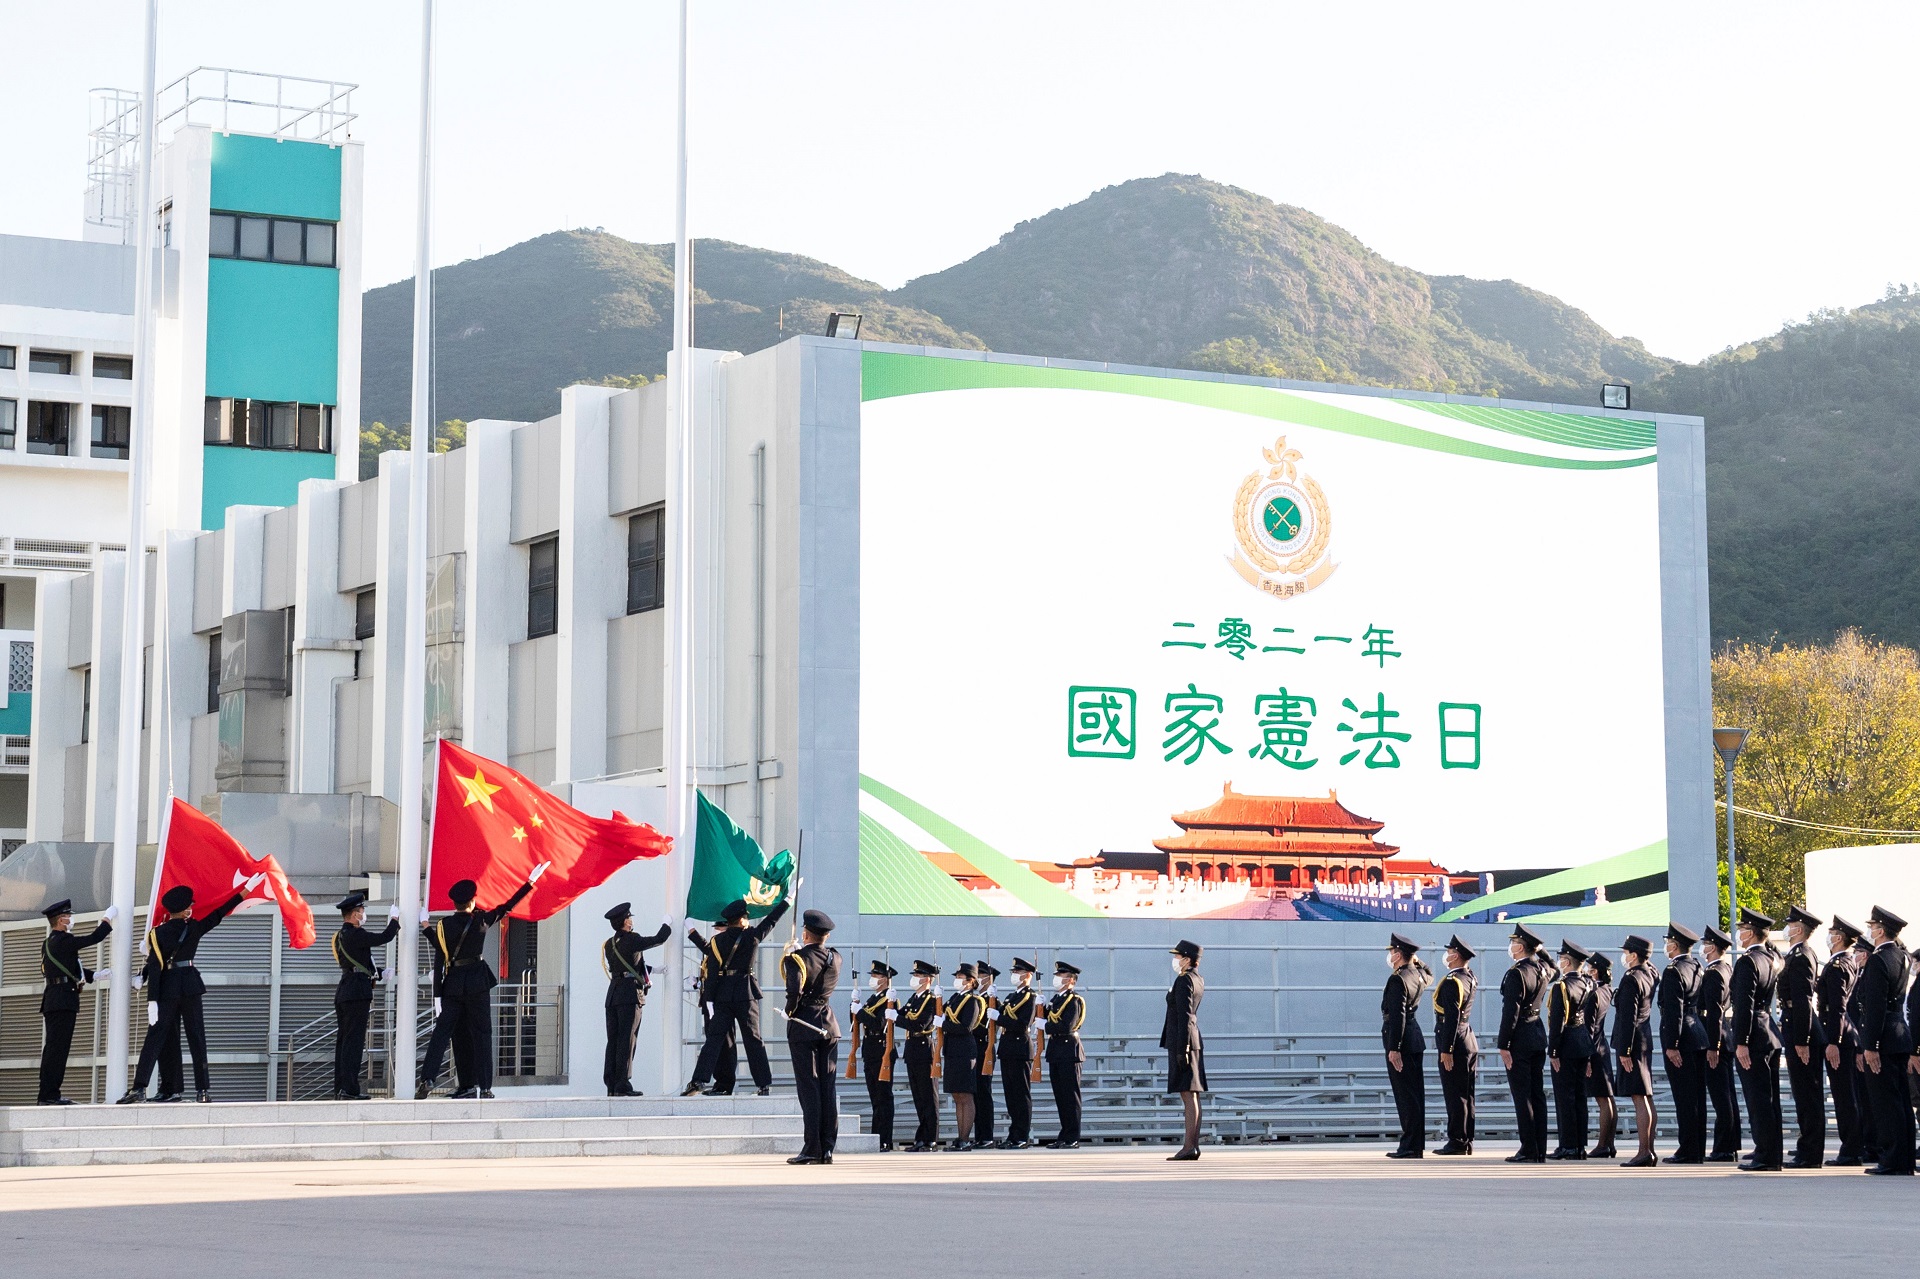 图片三：为配合「国家宪法日」，保安局辖下六个纪律部队今早（十二月四日）分别举行升旗仪式，相关部门首长均有出席观礼。图示香港海关的升旗仪式。